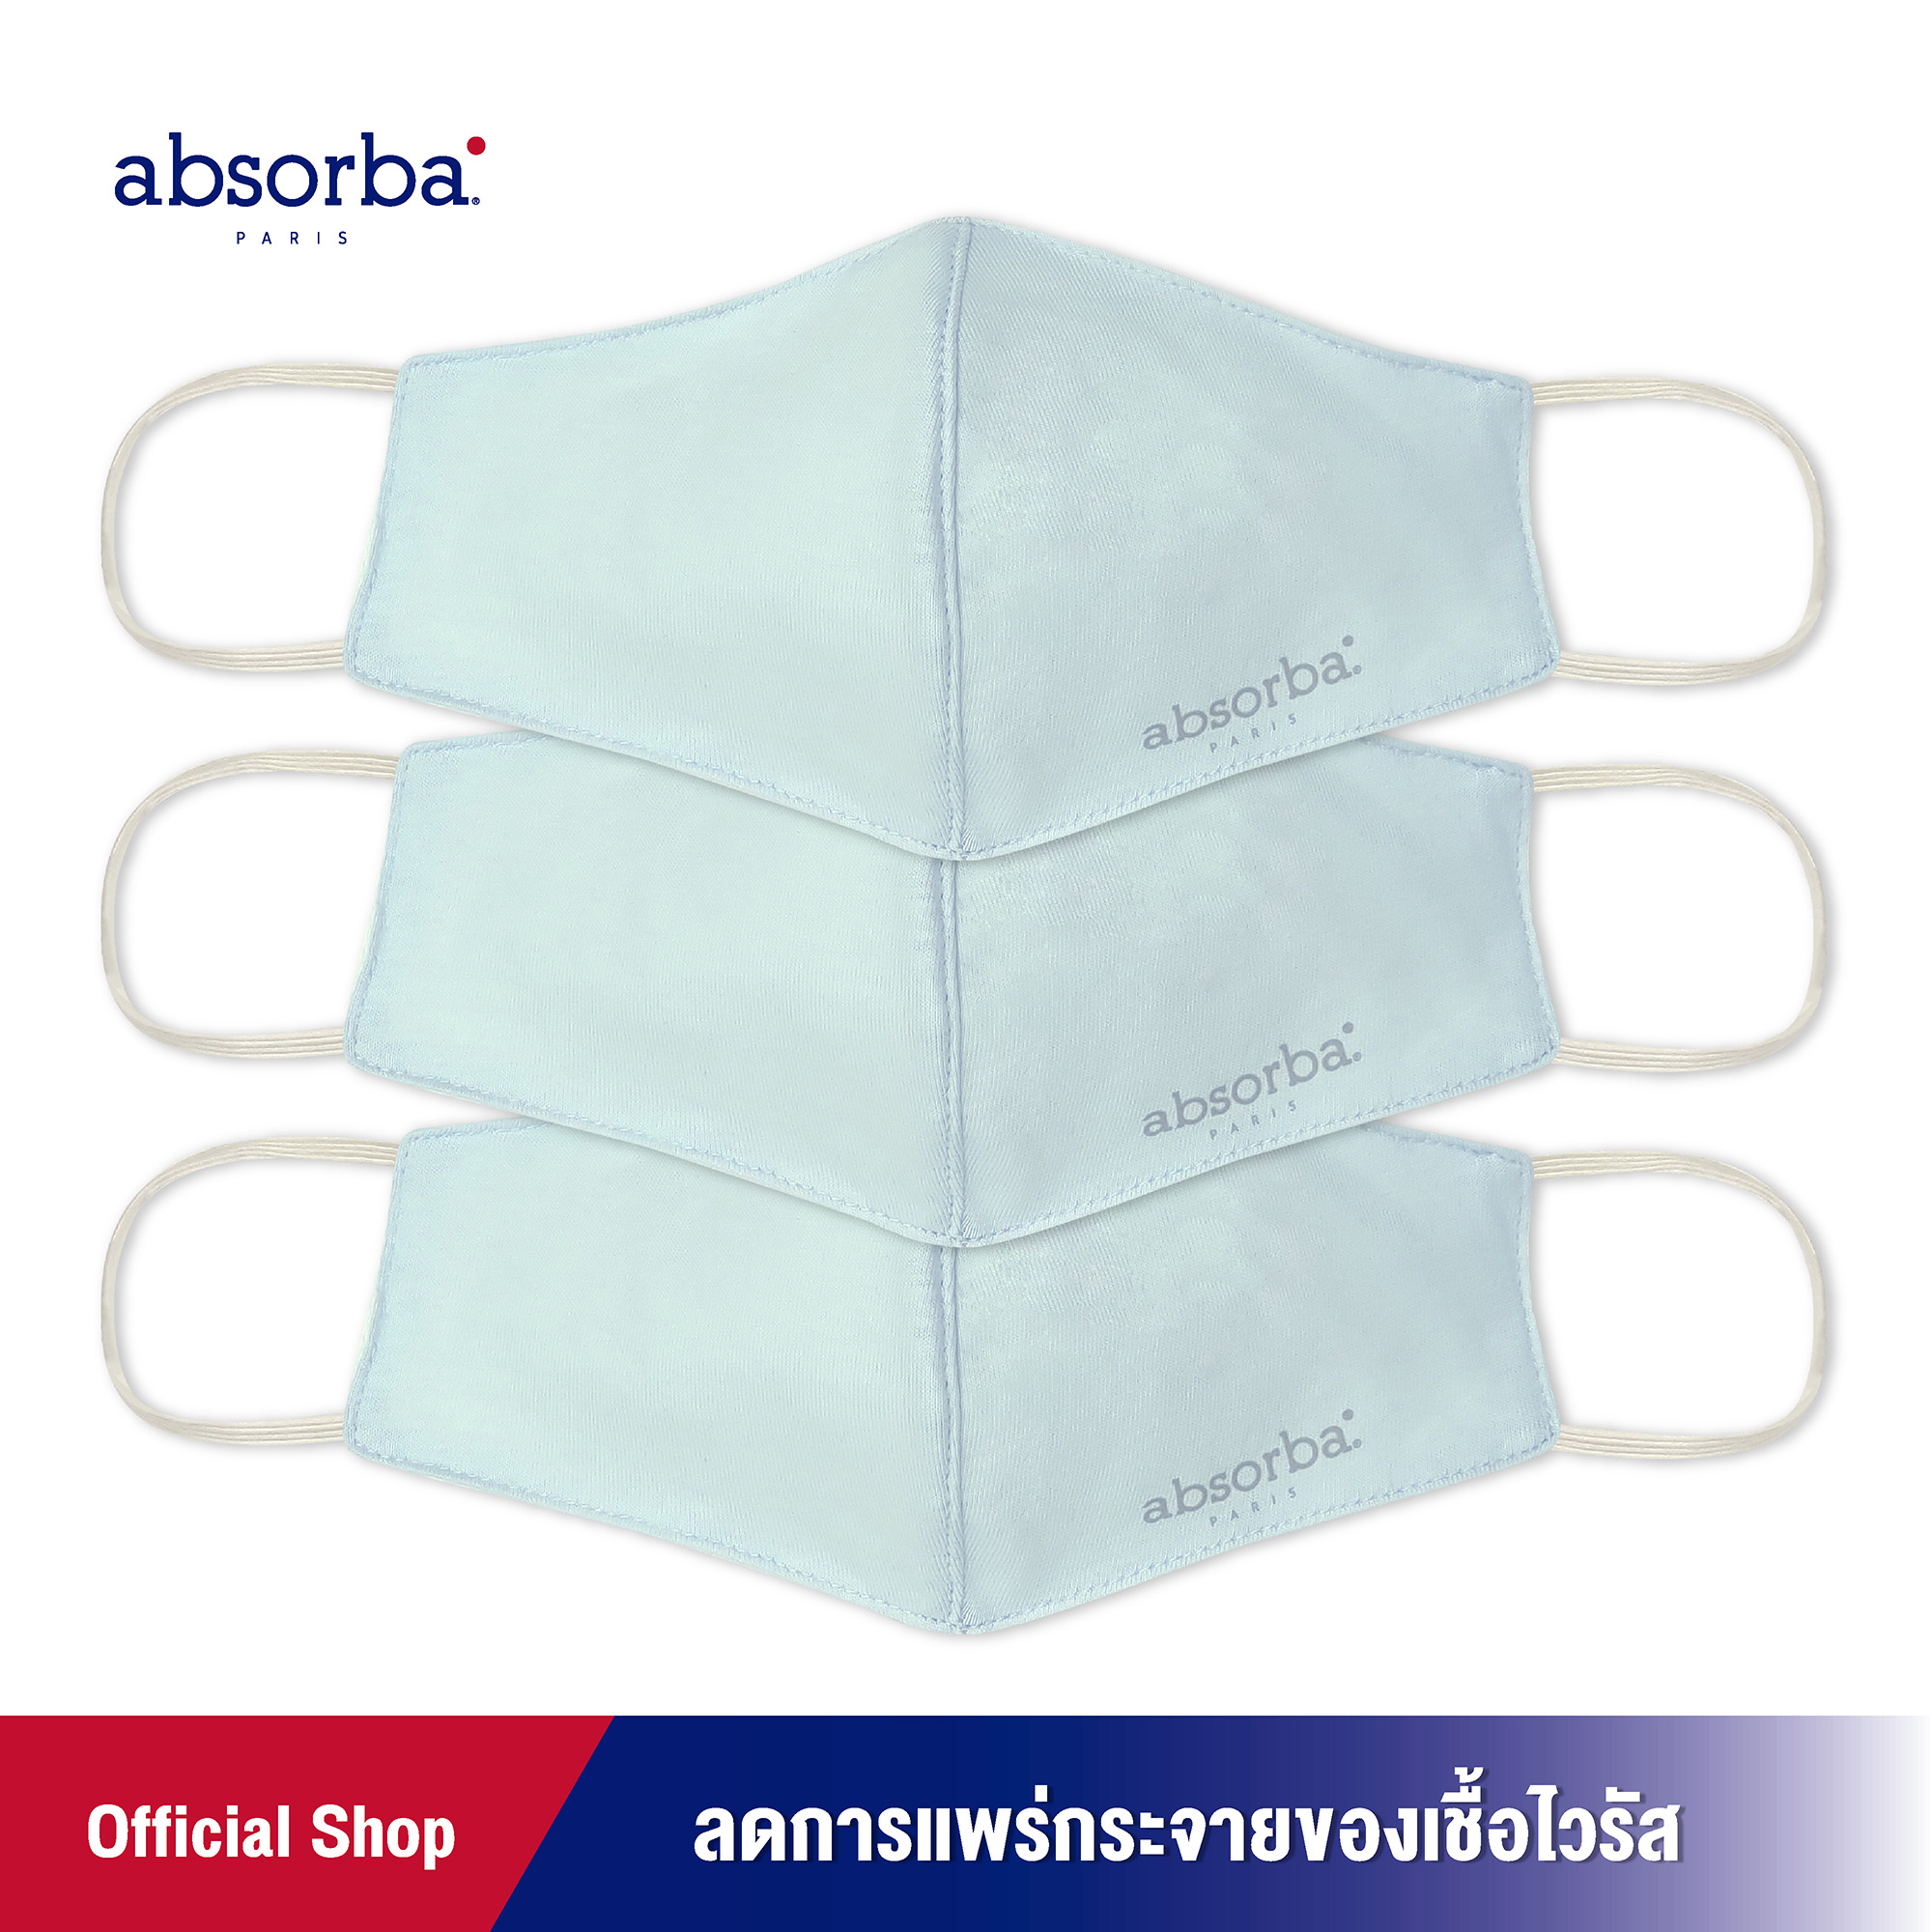 absorba(แอ็บซอร์บา)หน้ากากผ้าสำหรับเด็ก แพ็ค 3 ชิ้น ป้องกันฝุ่นทั่วไป ลดการสะสมของแบคทีเรีย สำหรับเด็กอายุ 2-5 ปี มีให้เลือก 3 สี - R1E0004